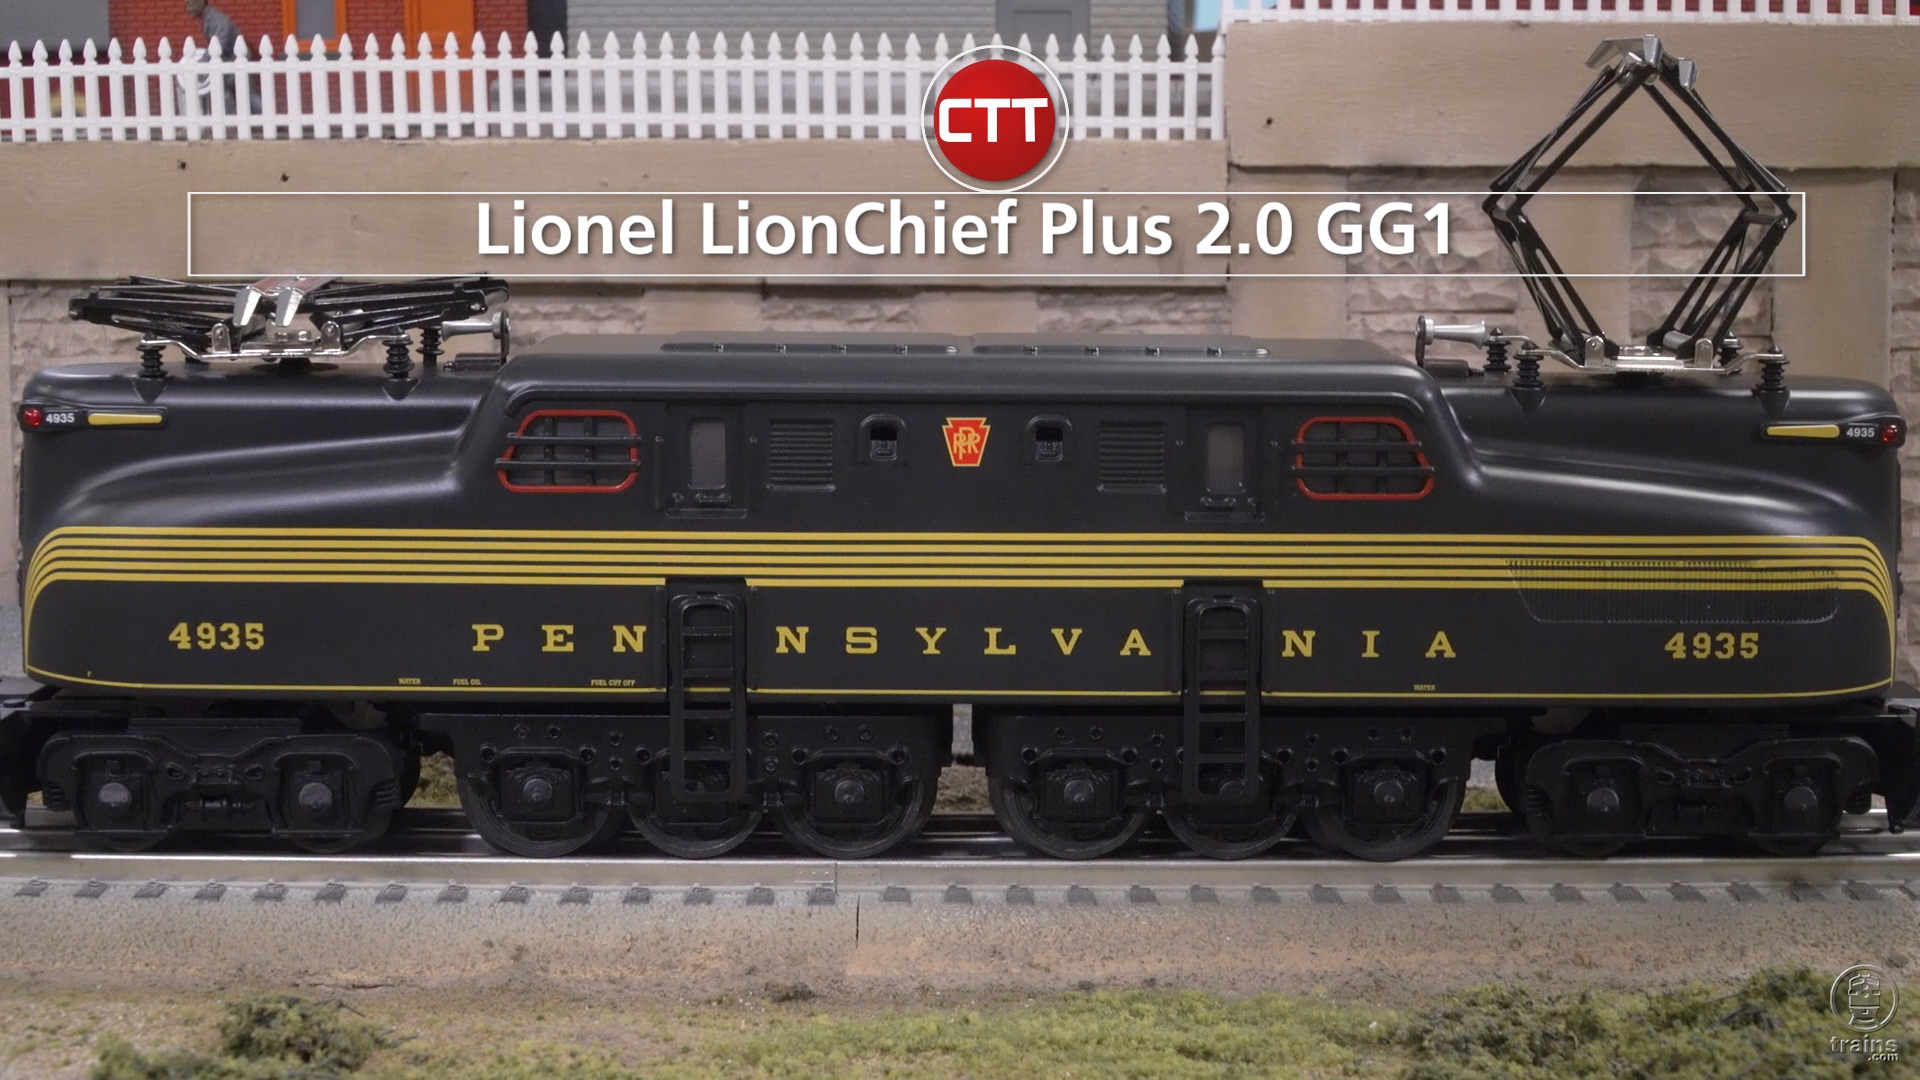 Lionel’s LionChief Plus 2.0 GG1